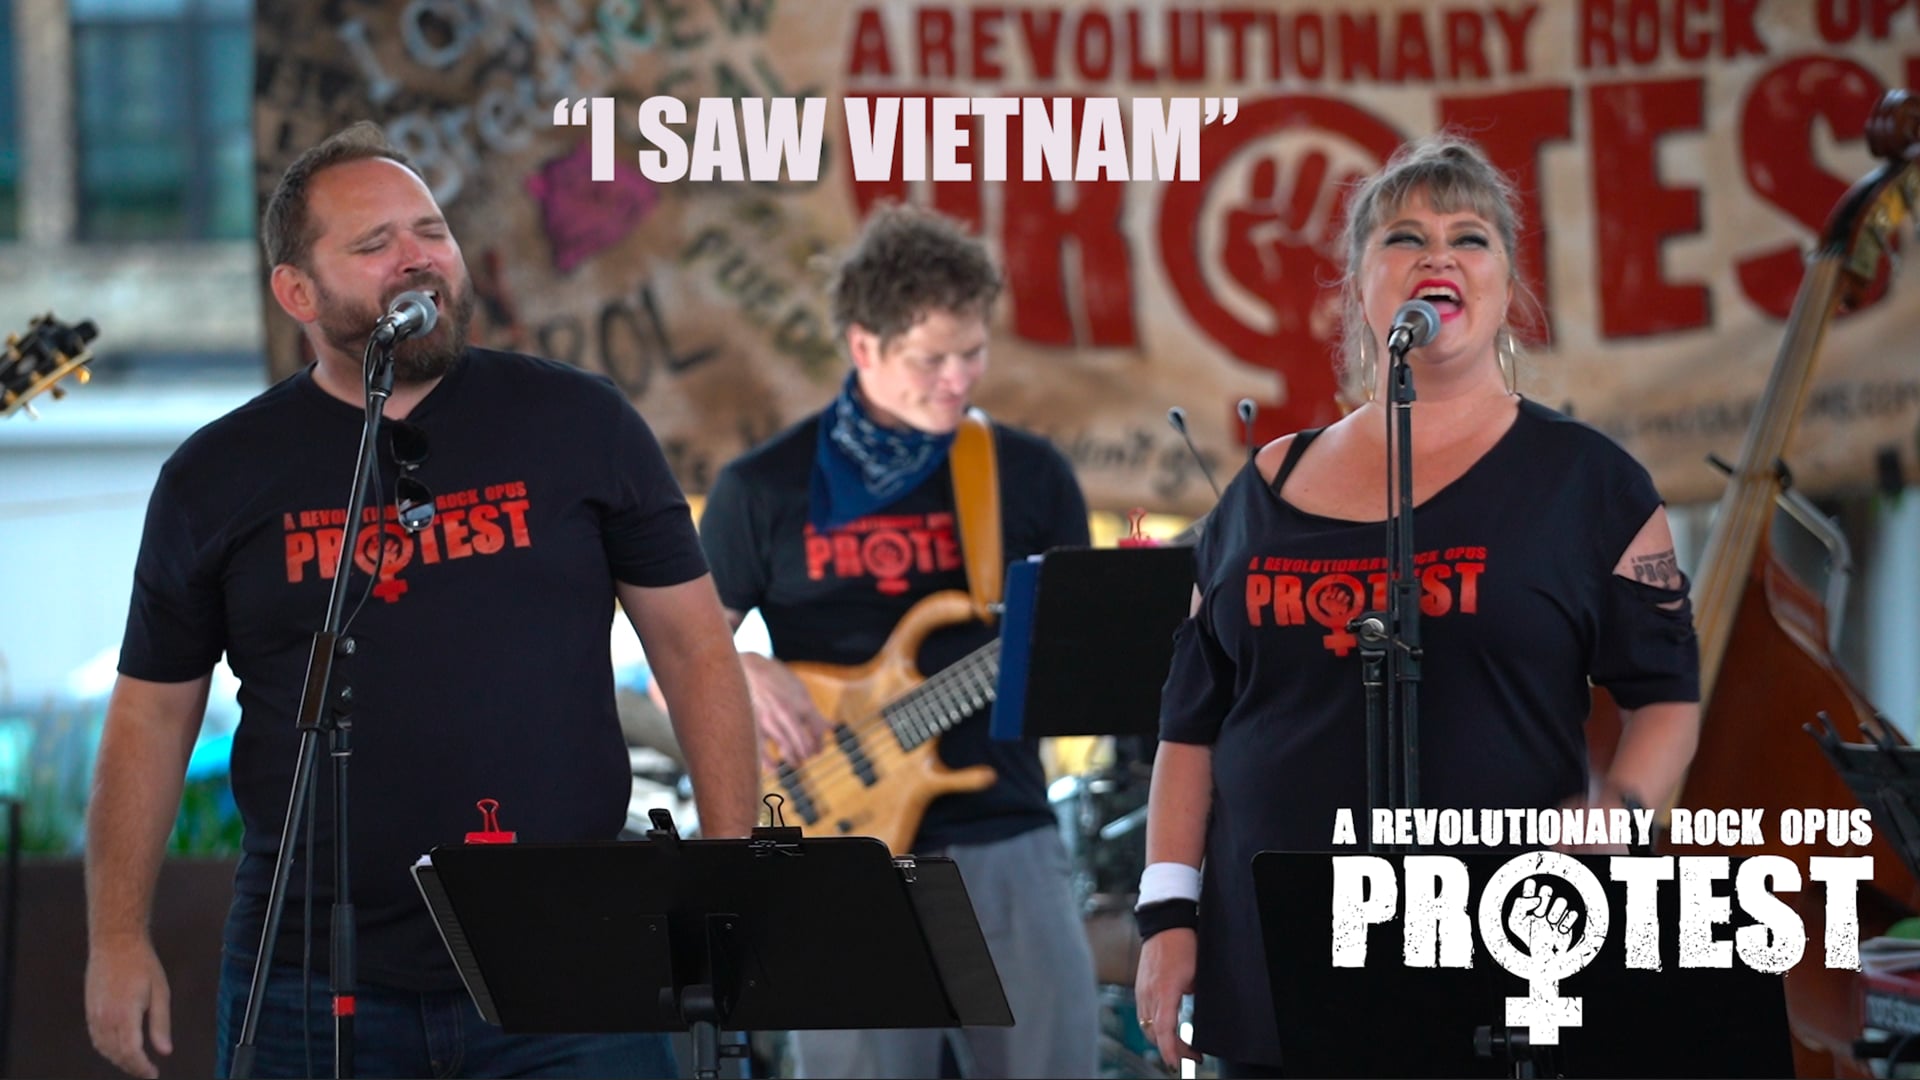 I SAW VIETNAM